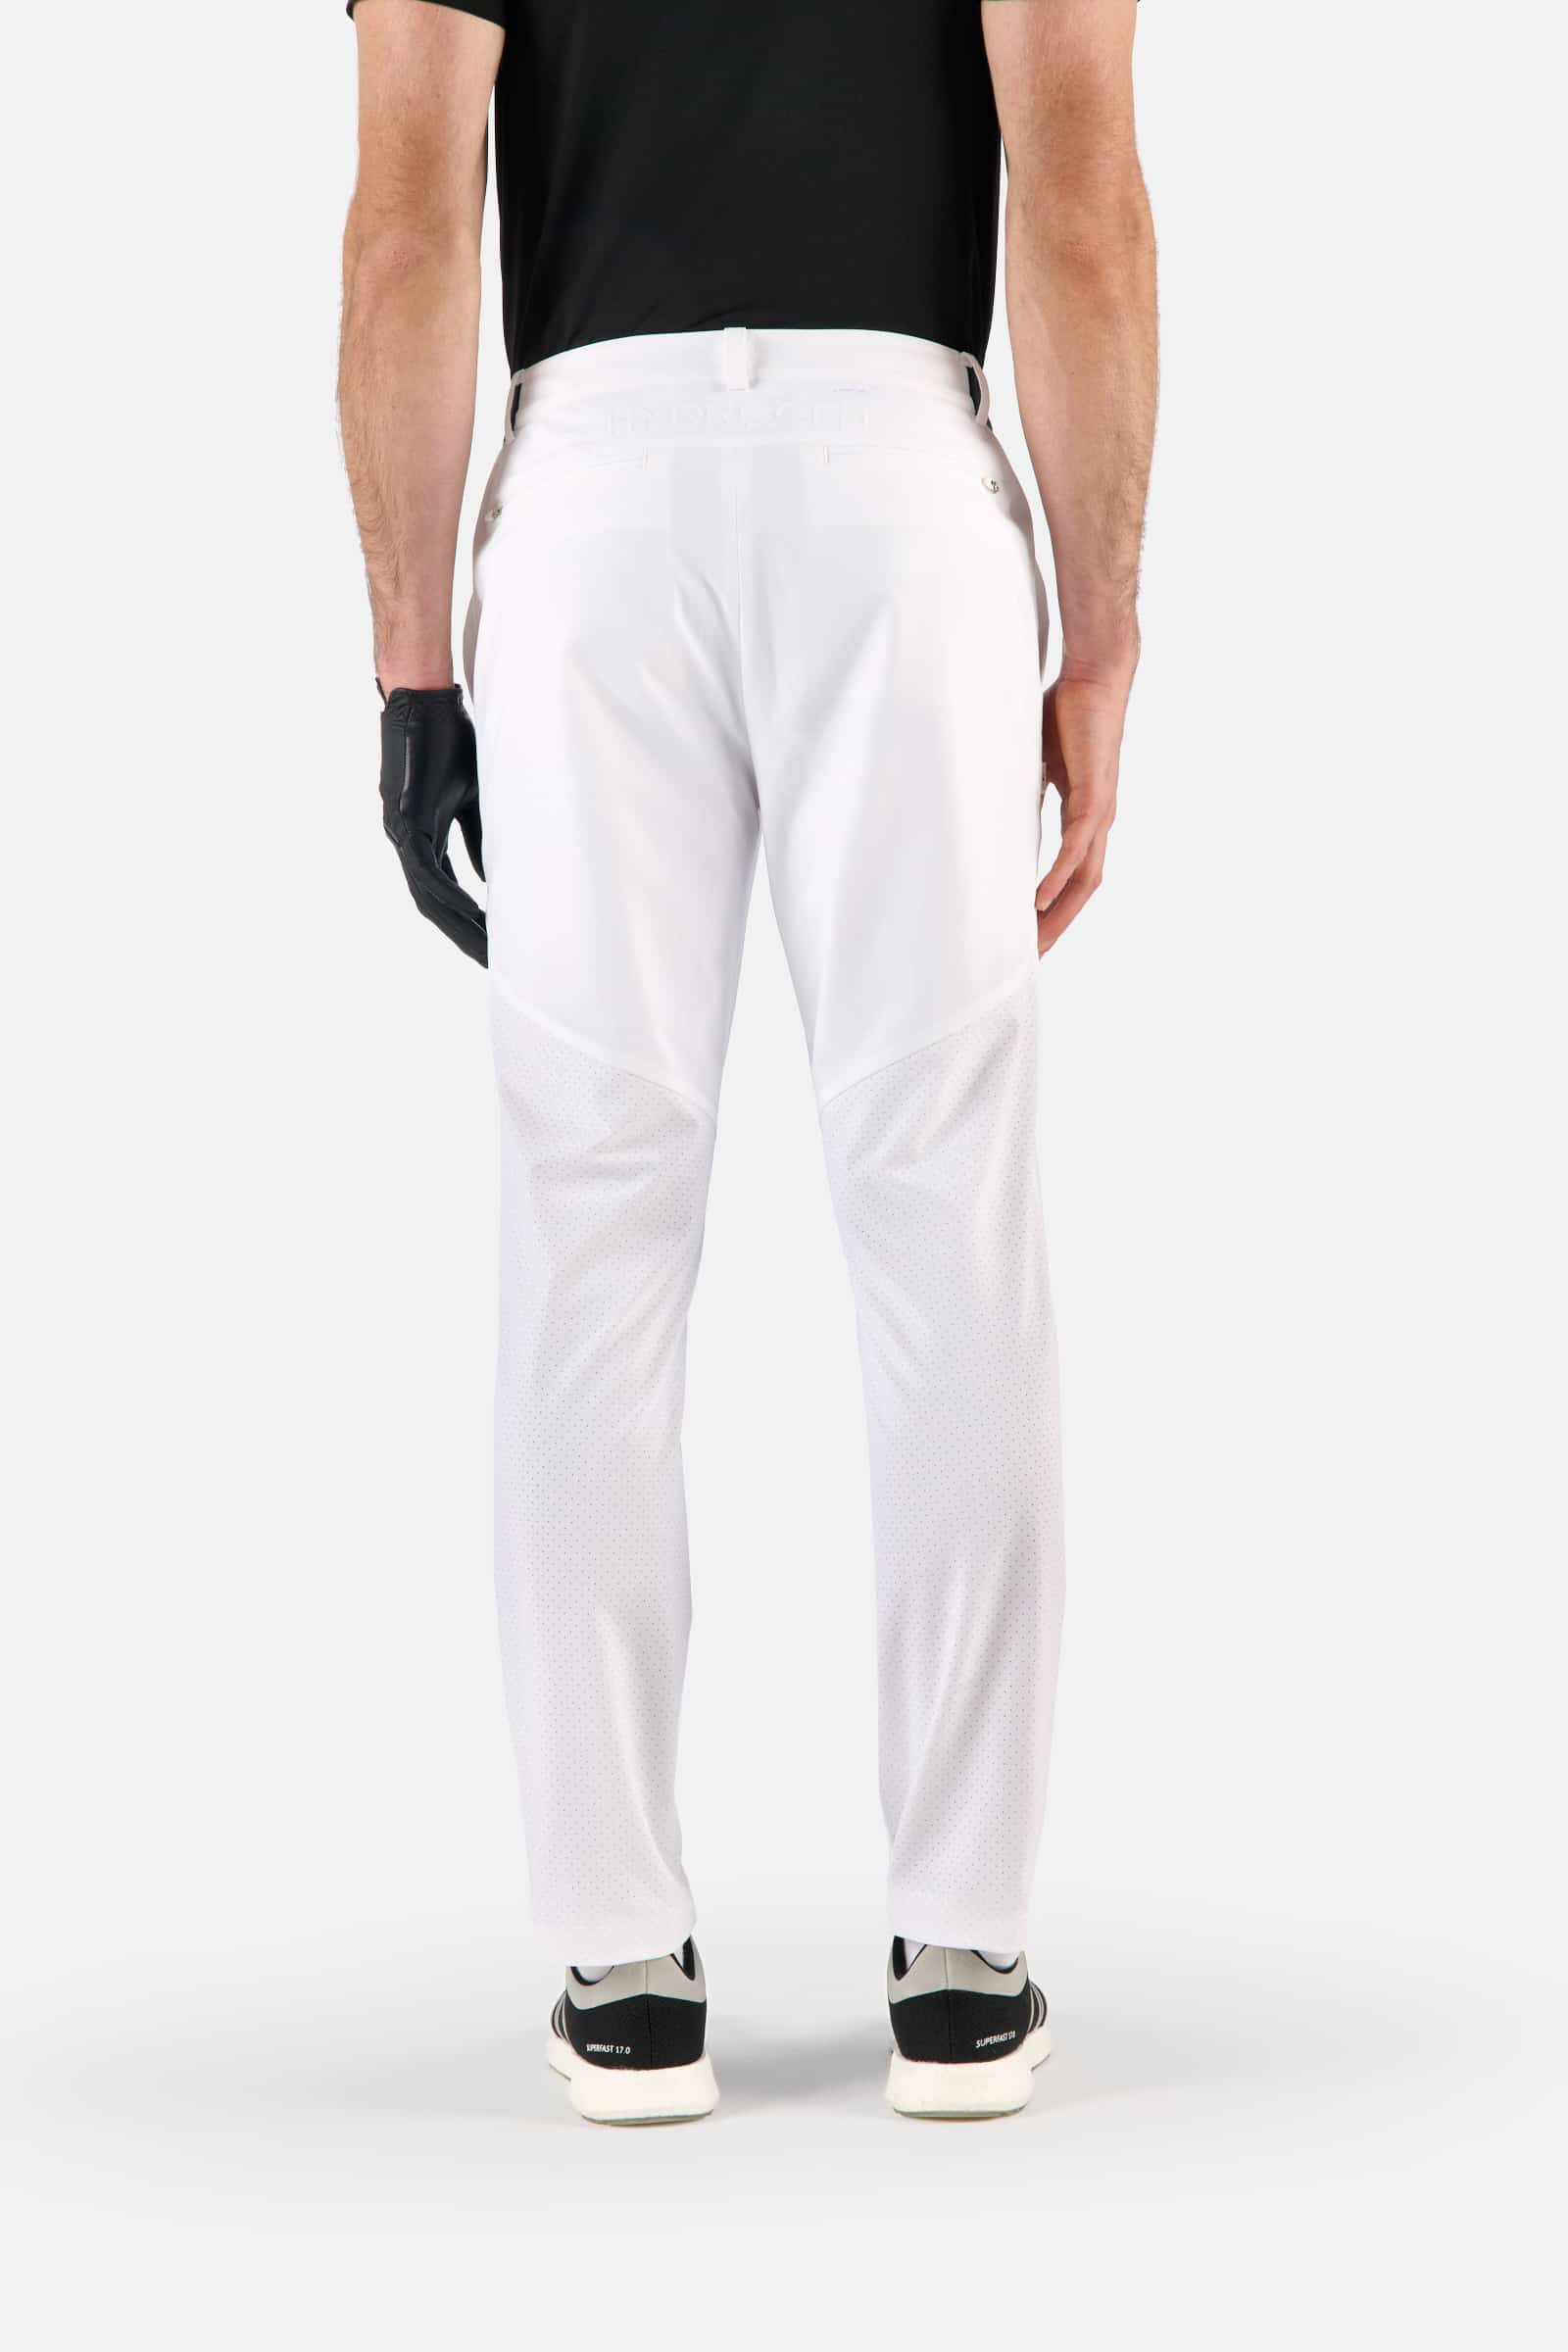 TECH PANTS - WHITE - Hydrogen - Luxury Sportwear